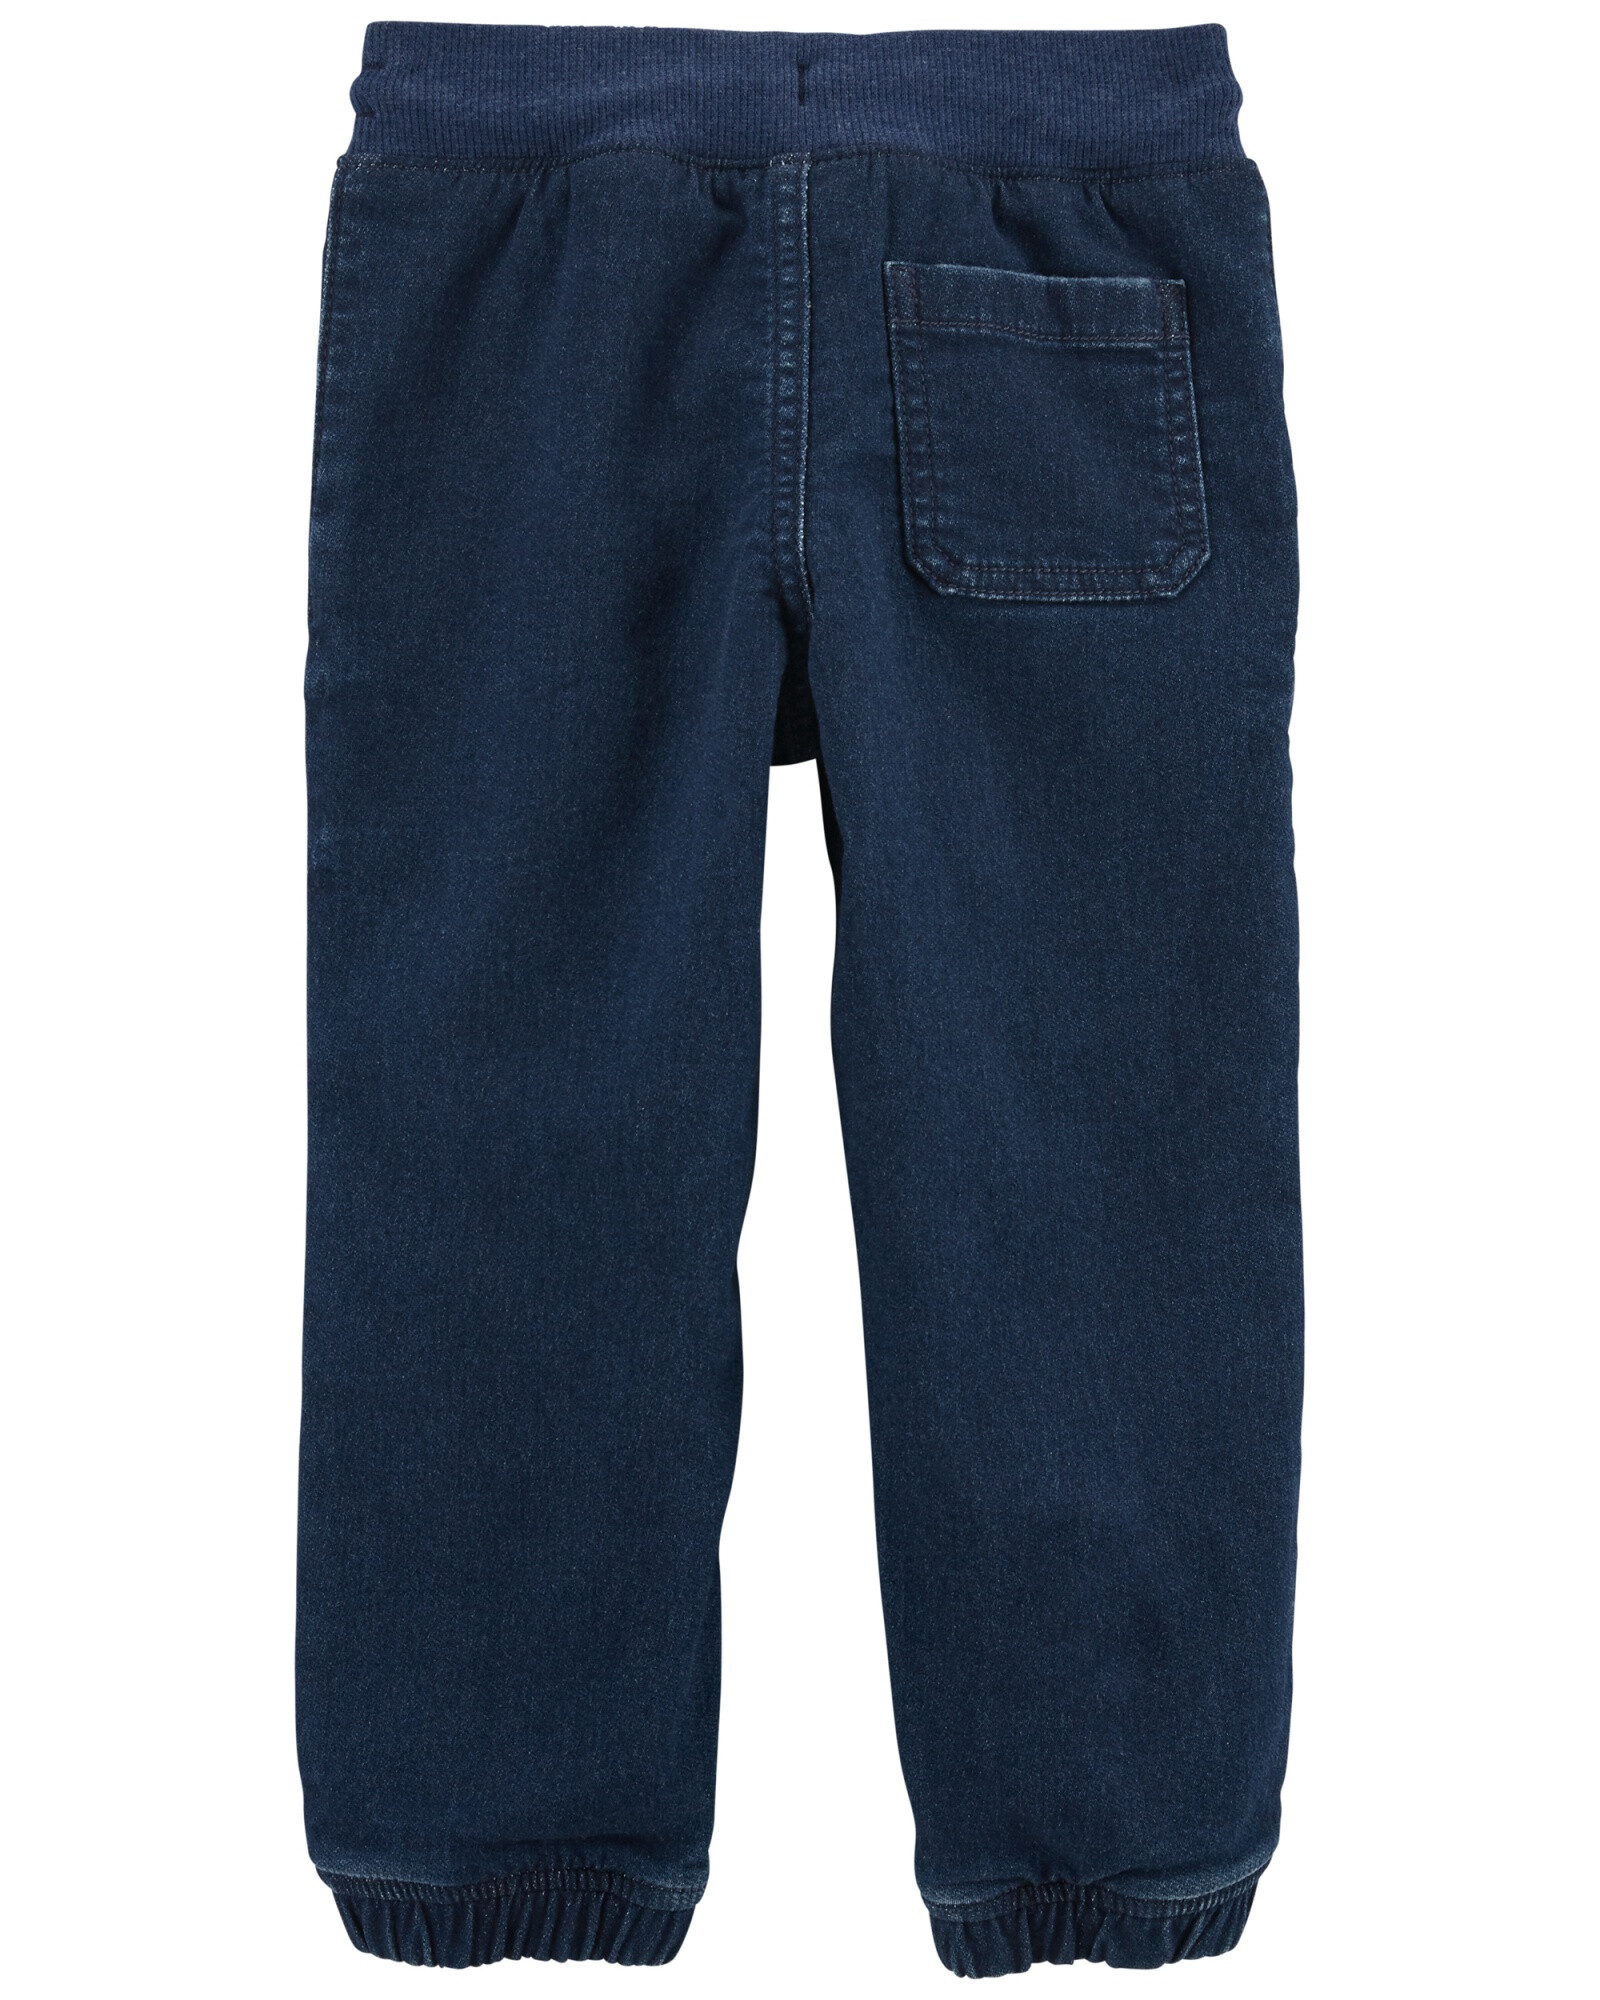 Pantalón de jean relajados estilo deportivo. Talles 2-5T Sin color